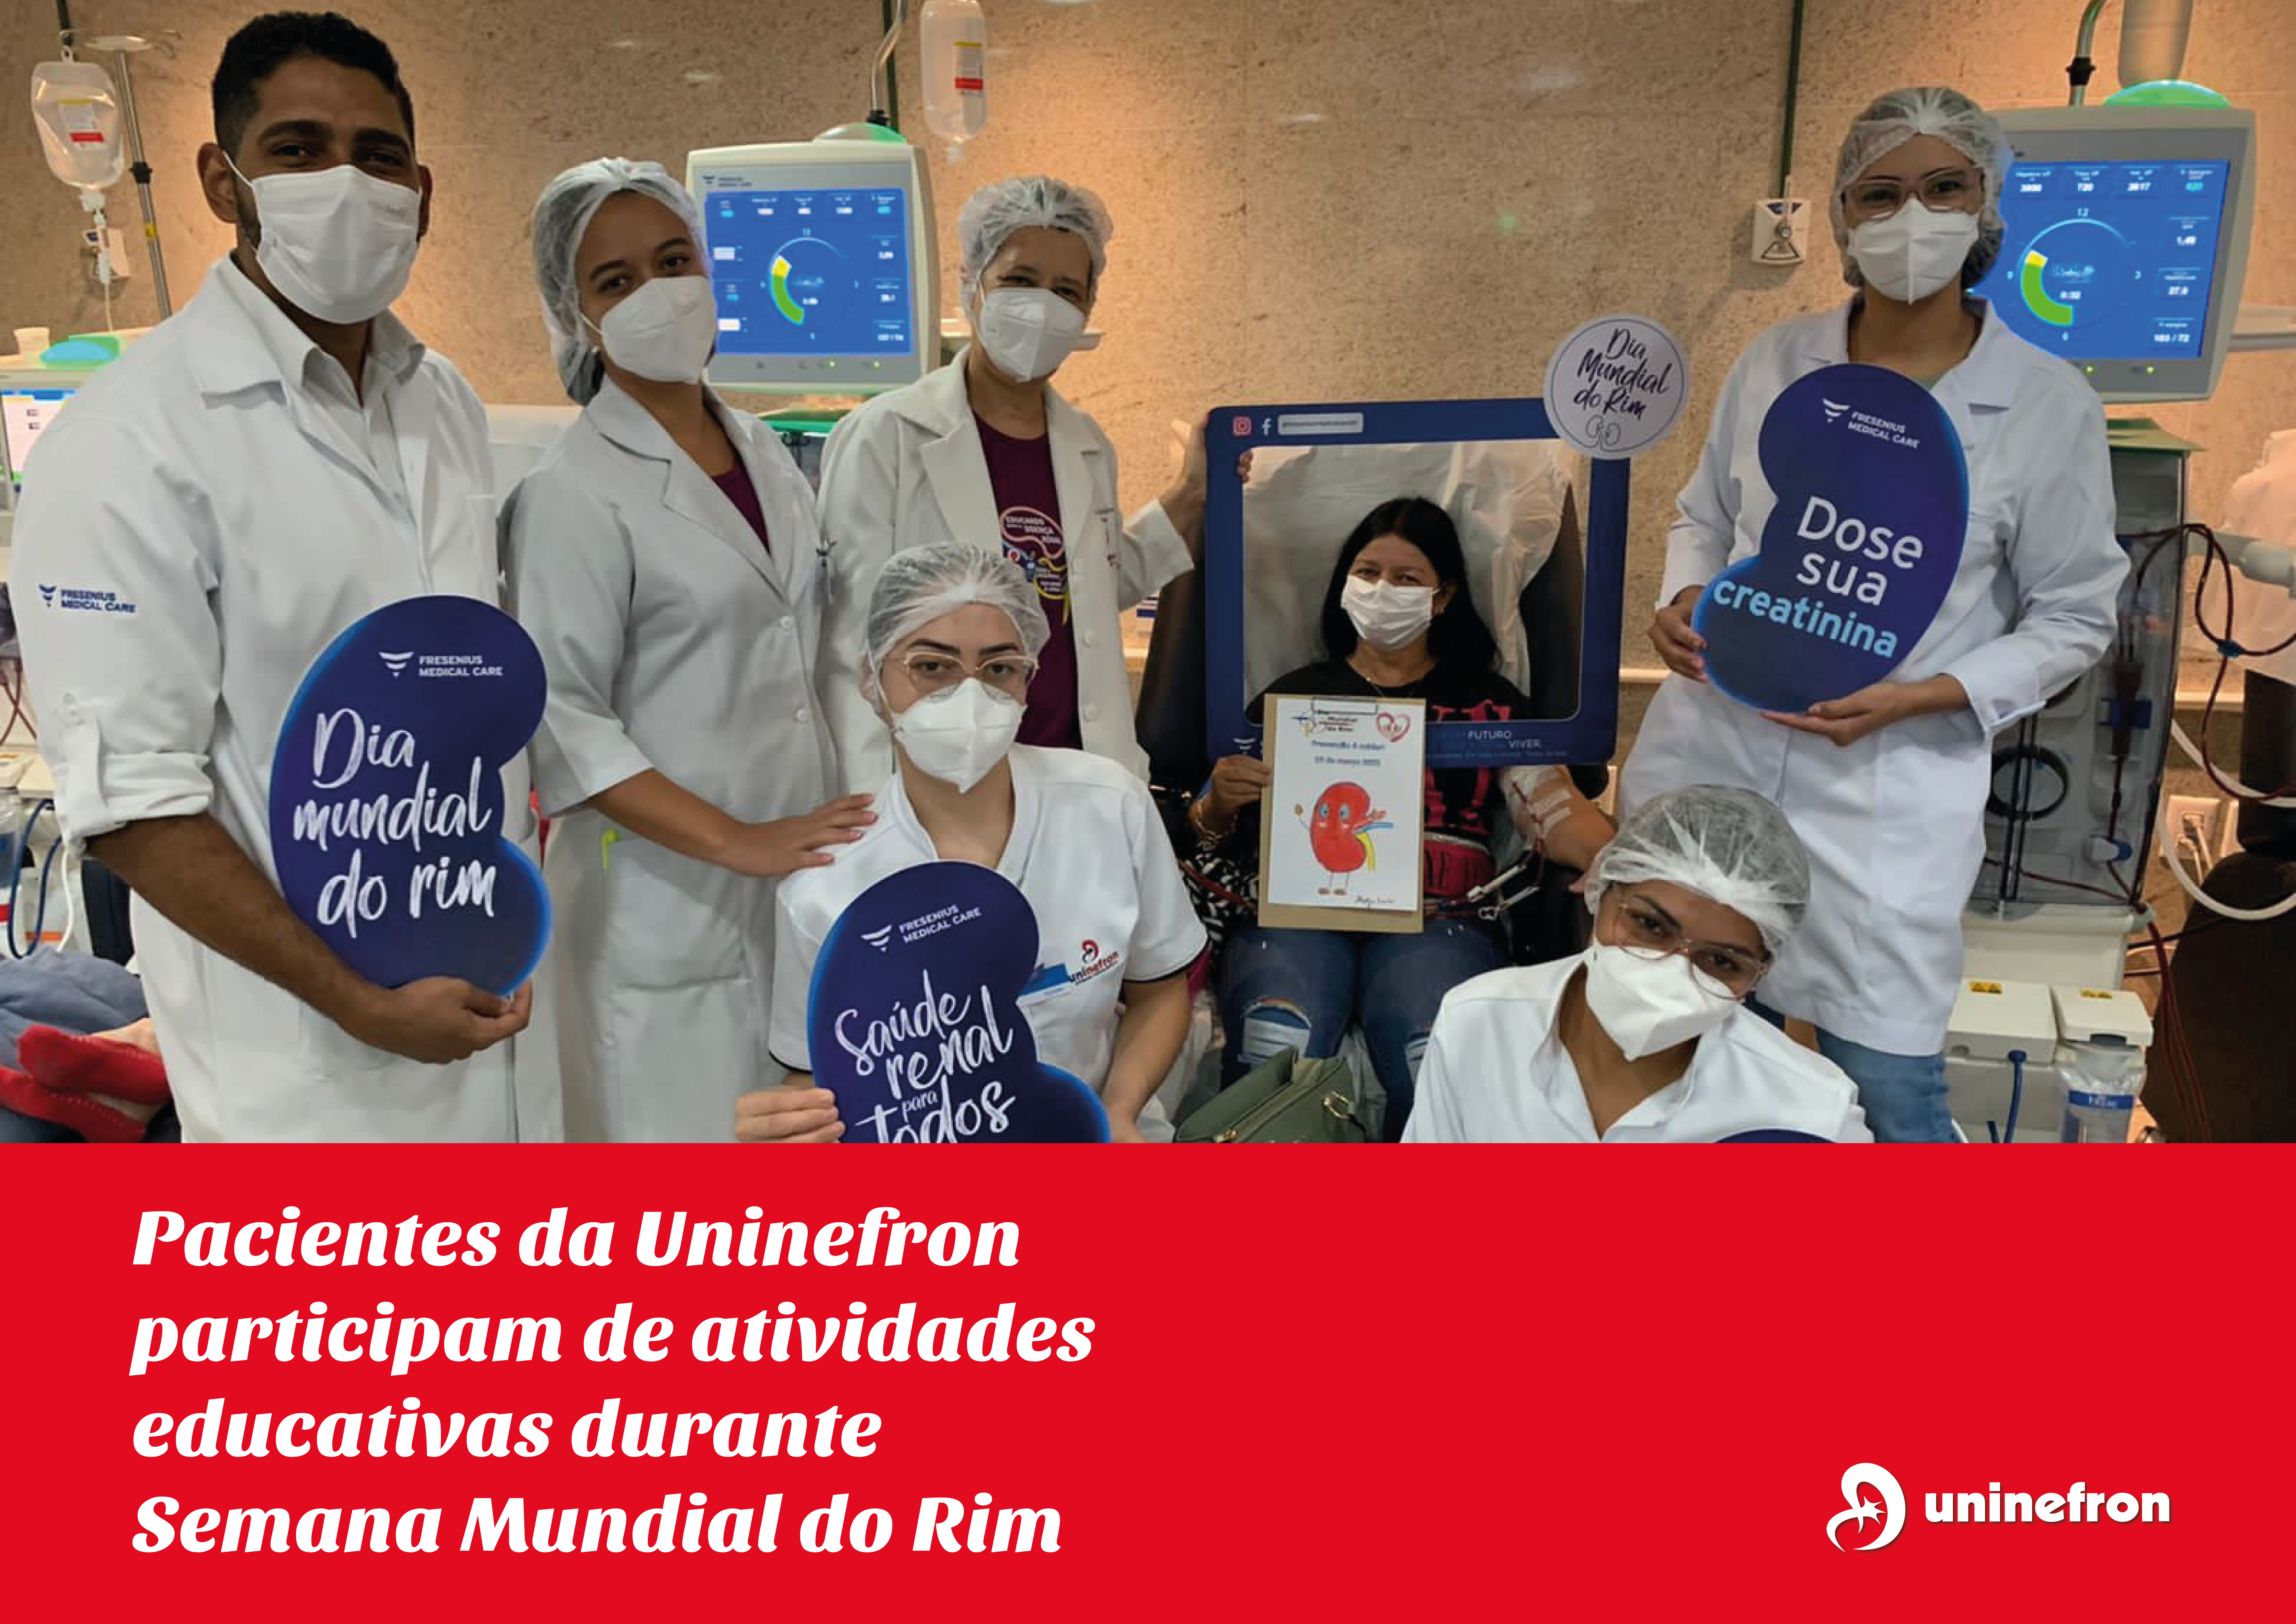 Pacientes da Uninefron participam de atividades educativas durante a Semana Mundial do Rim